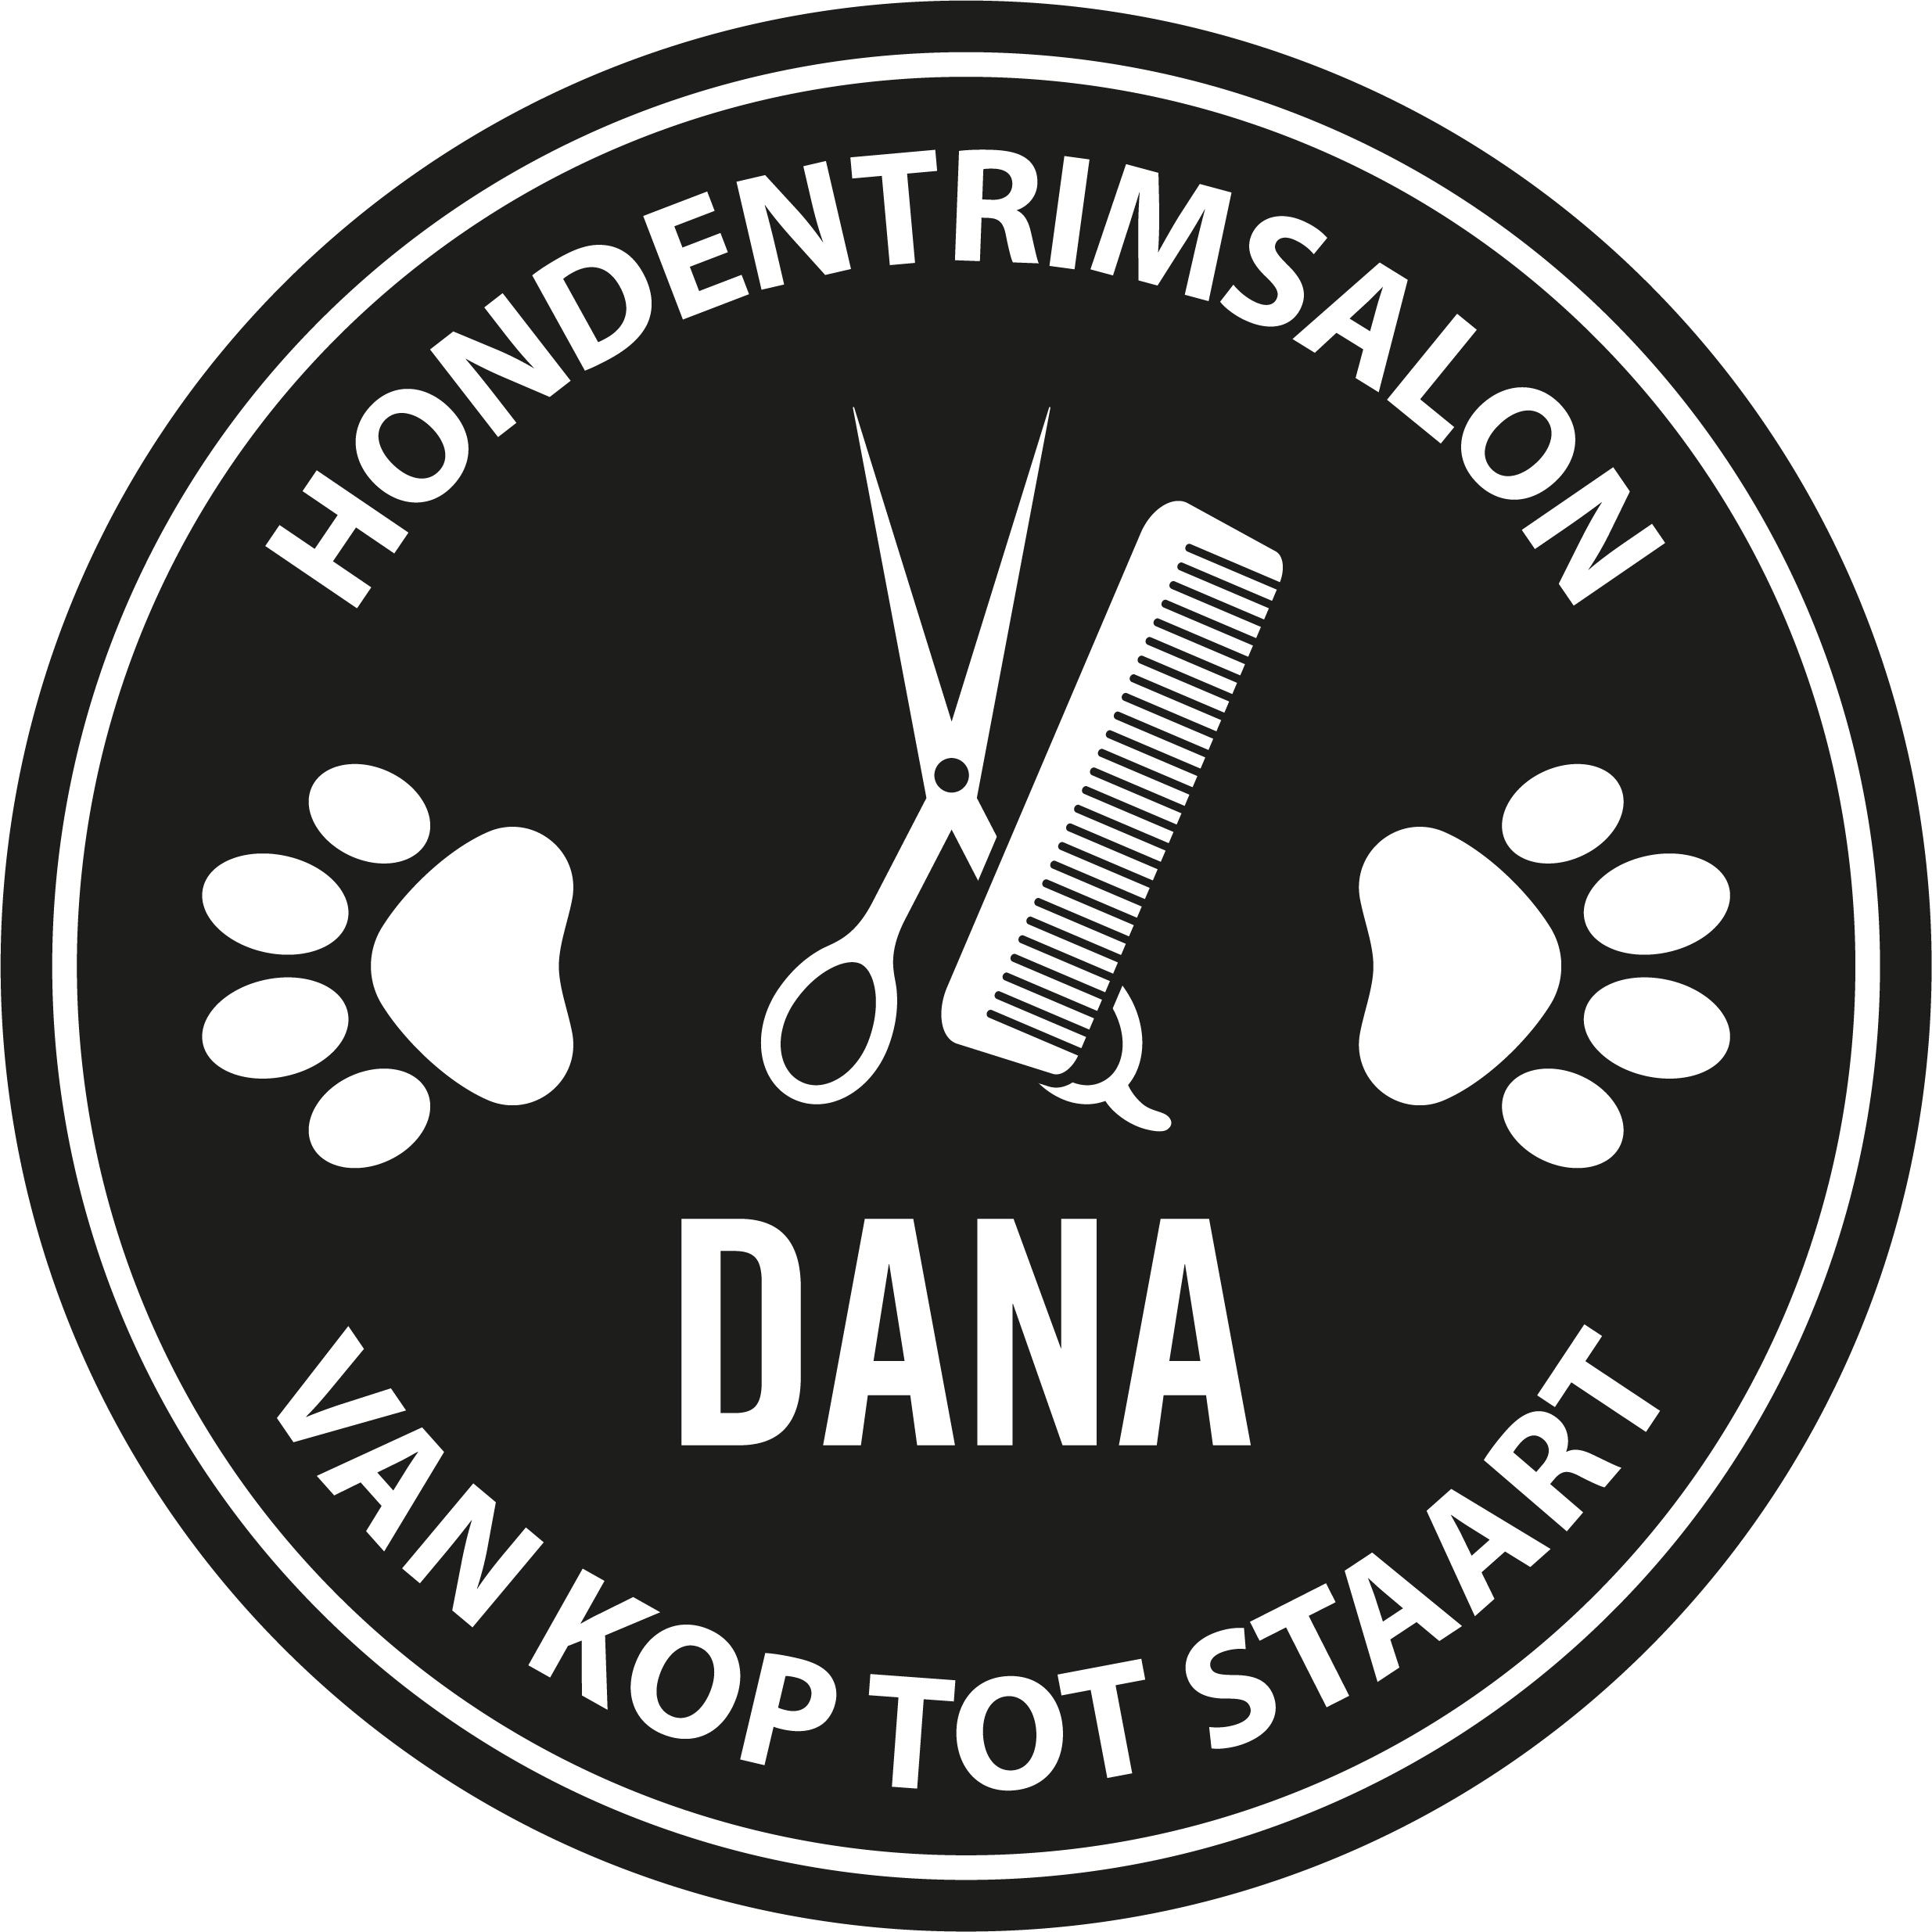 hondentrimmers Antwerpen Hondentrimsalon Dana